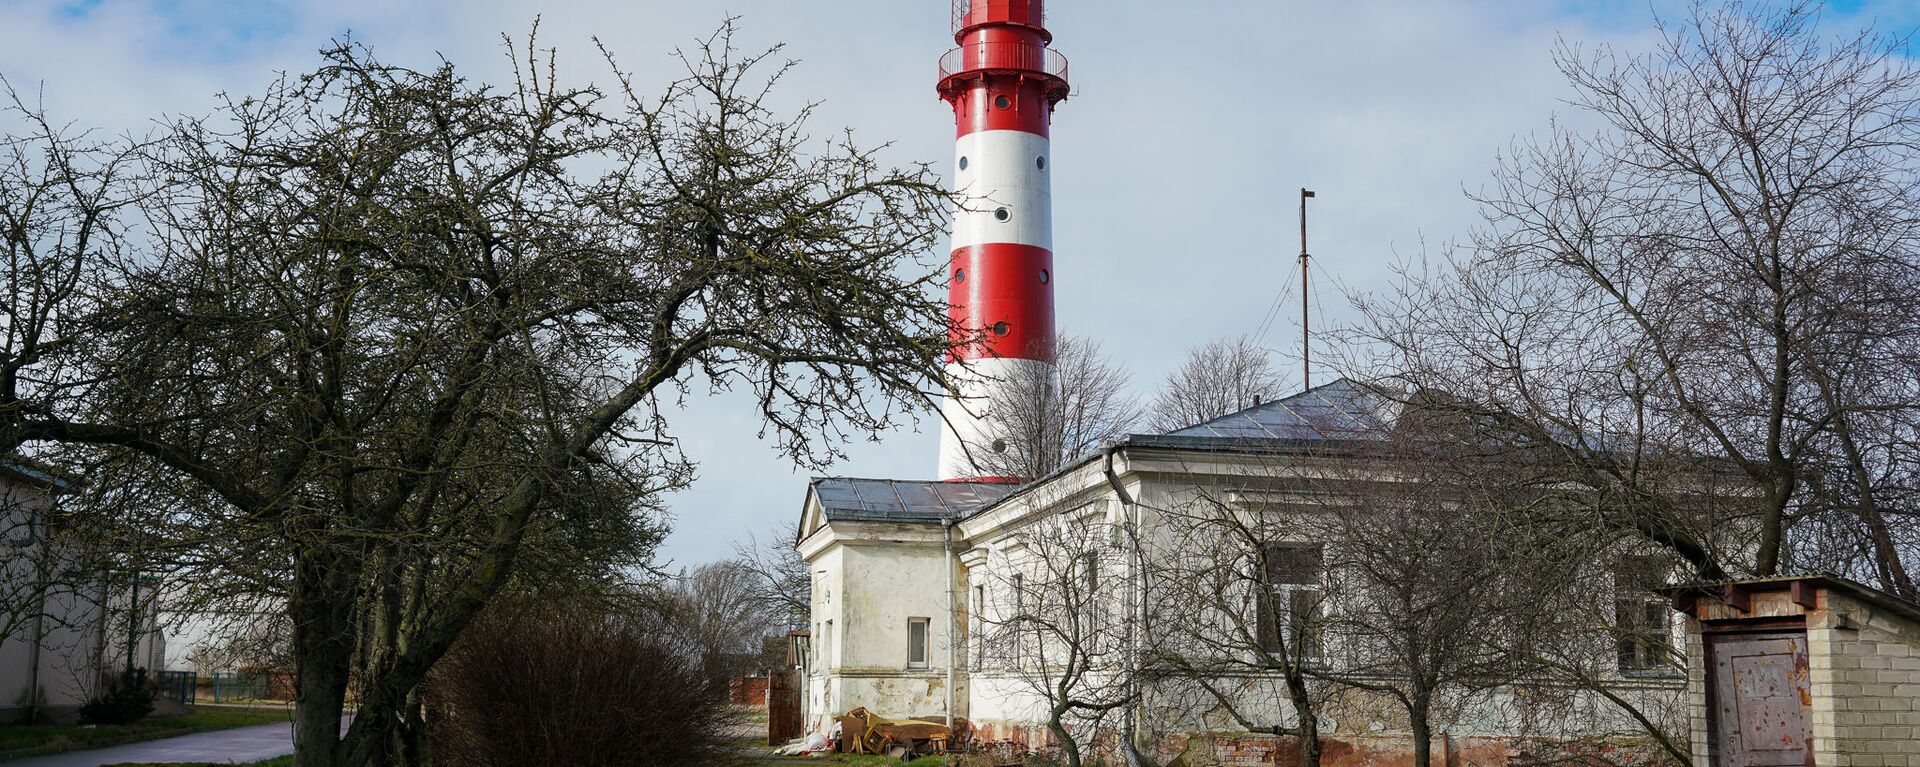 Визитная карточка Лиепаи - старинный маяк, расположенный на территории рыбоконсервного завода - Sputnik Латвия, 1920, 28.09.2020